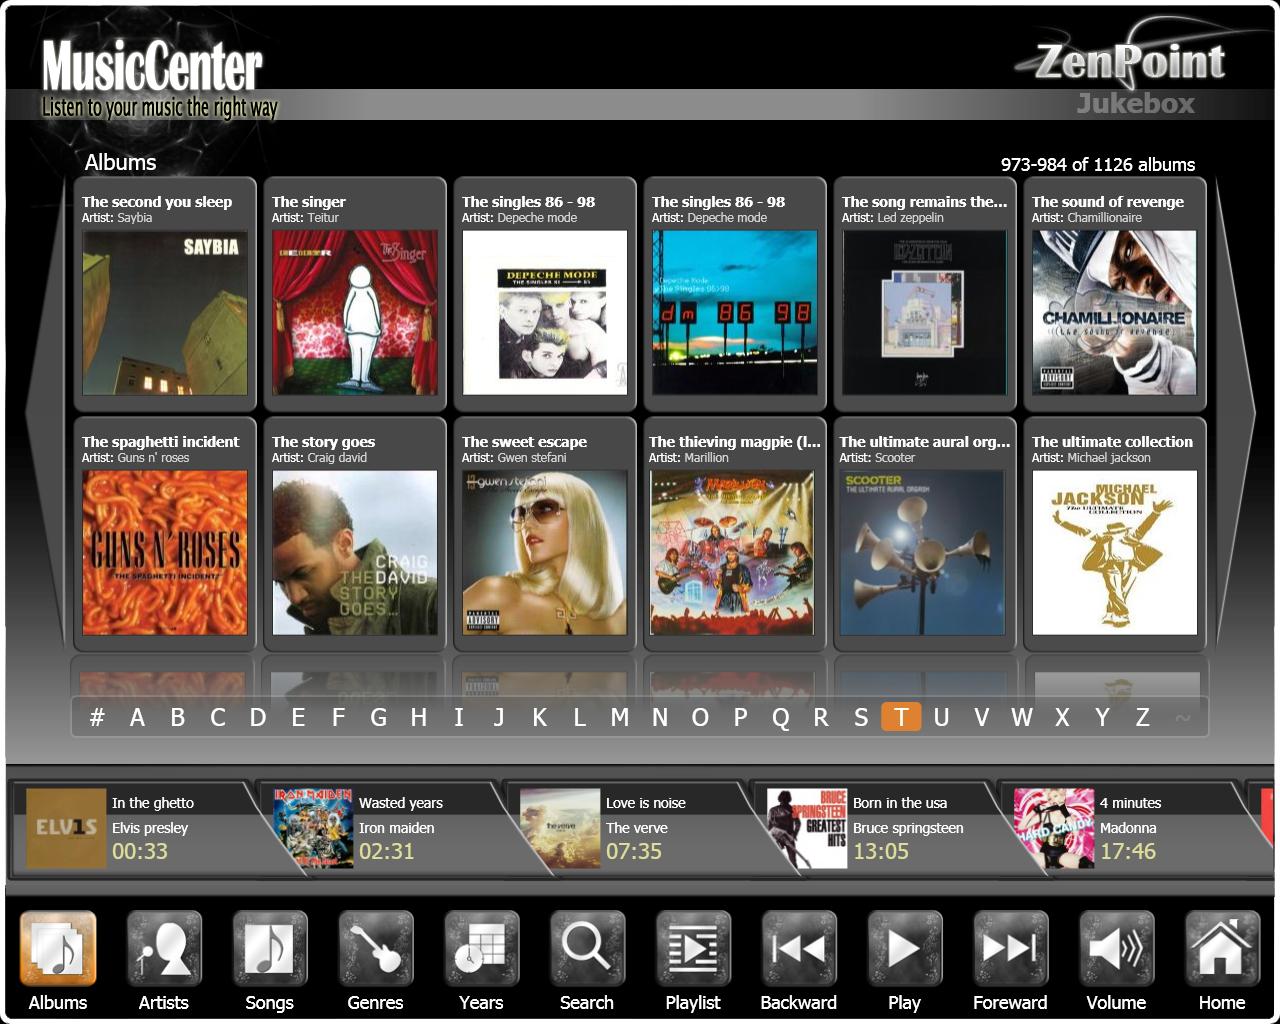 ZenPoint DigitalCenter